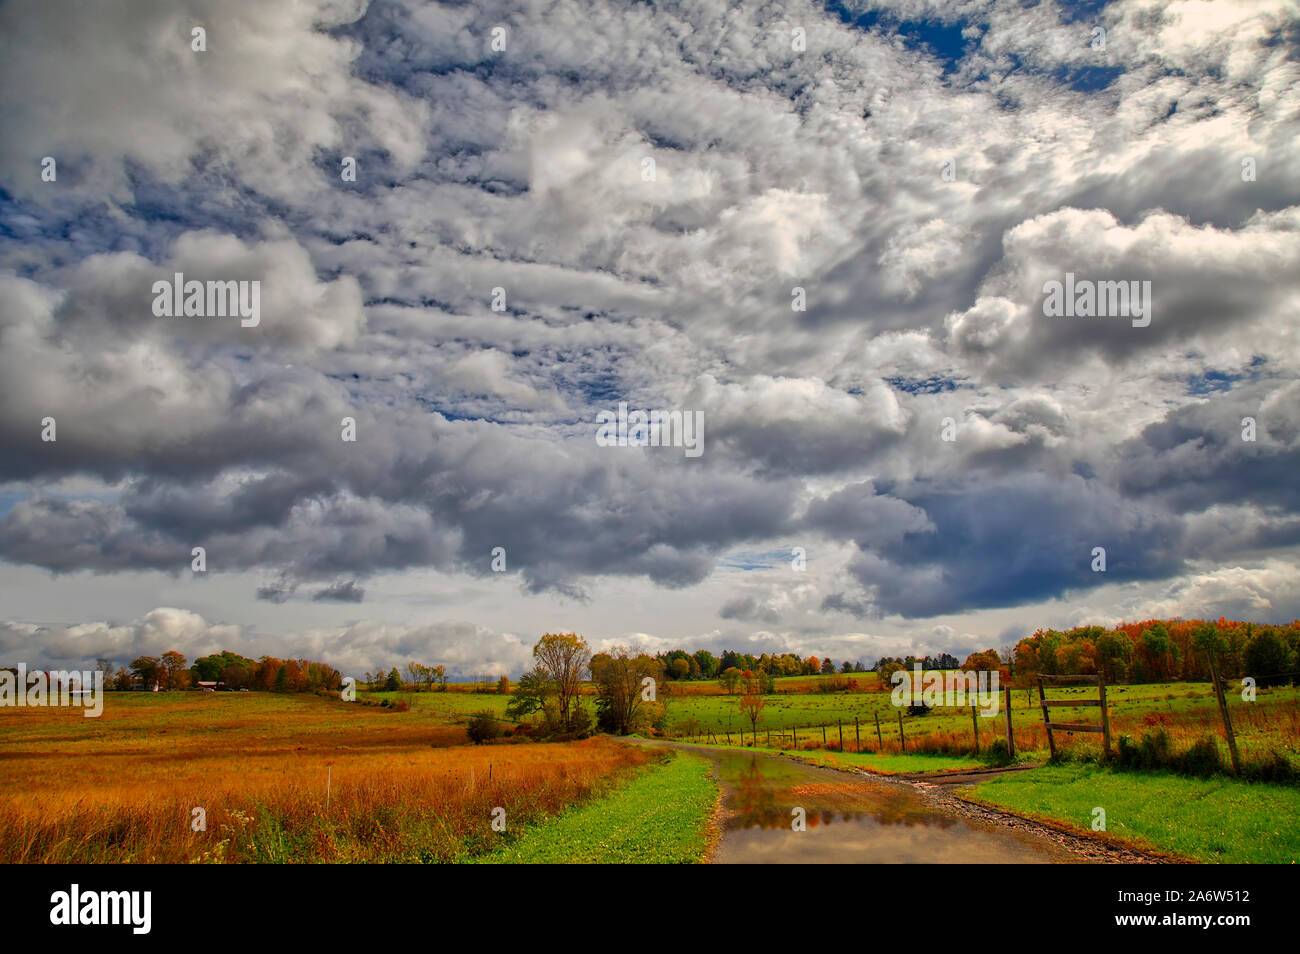 New Paltz Rural Hudson Valley, NY - paysage avec un ciel dramatique après une tempête qui passe avec les couleurs vives de l'automne pointe le feuillage. Banque D'Images